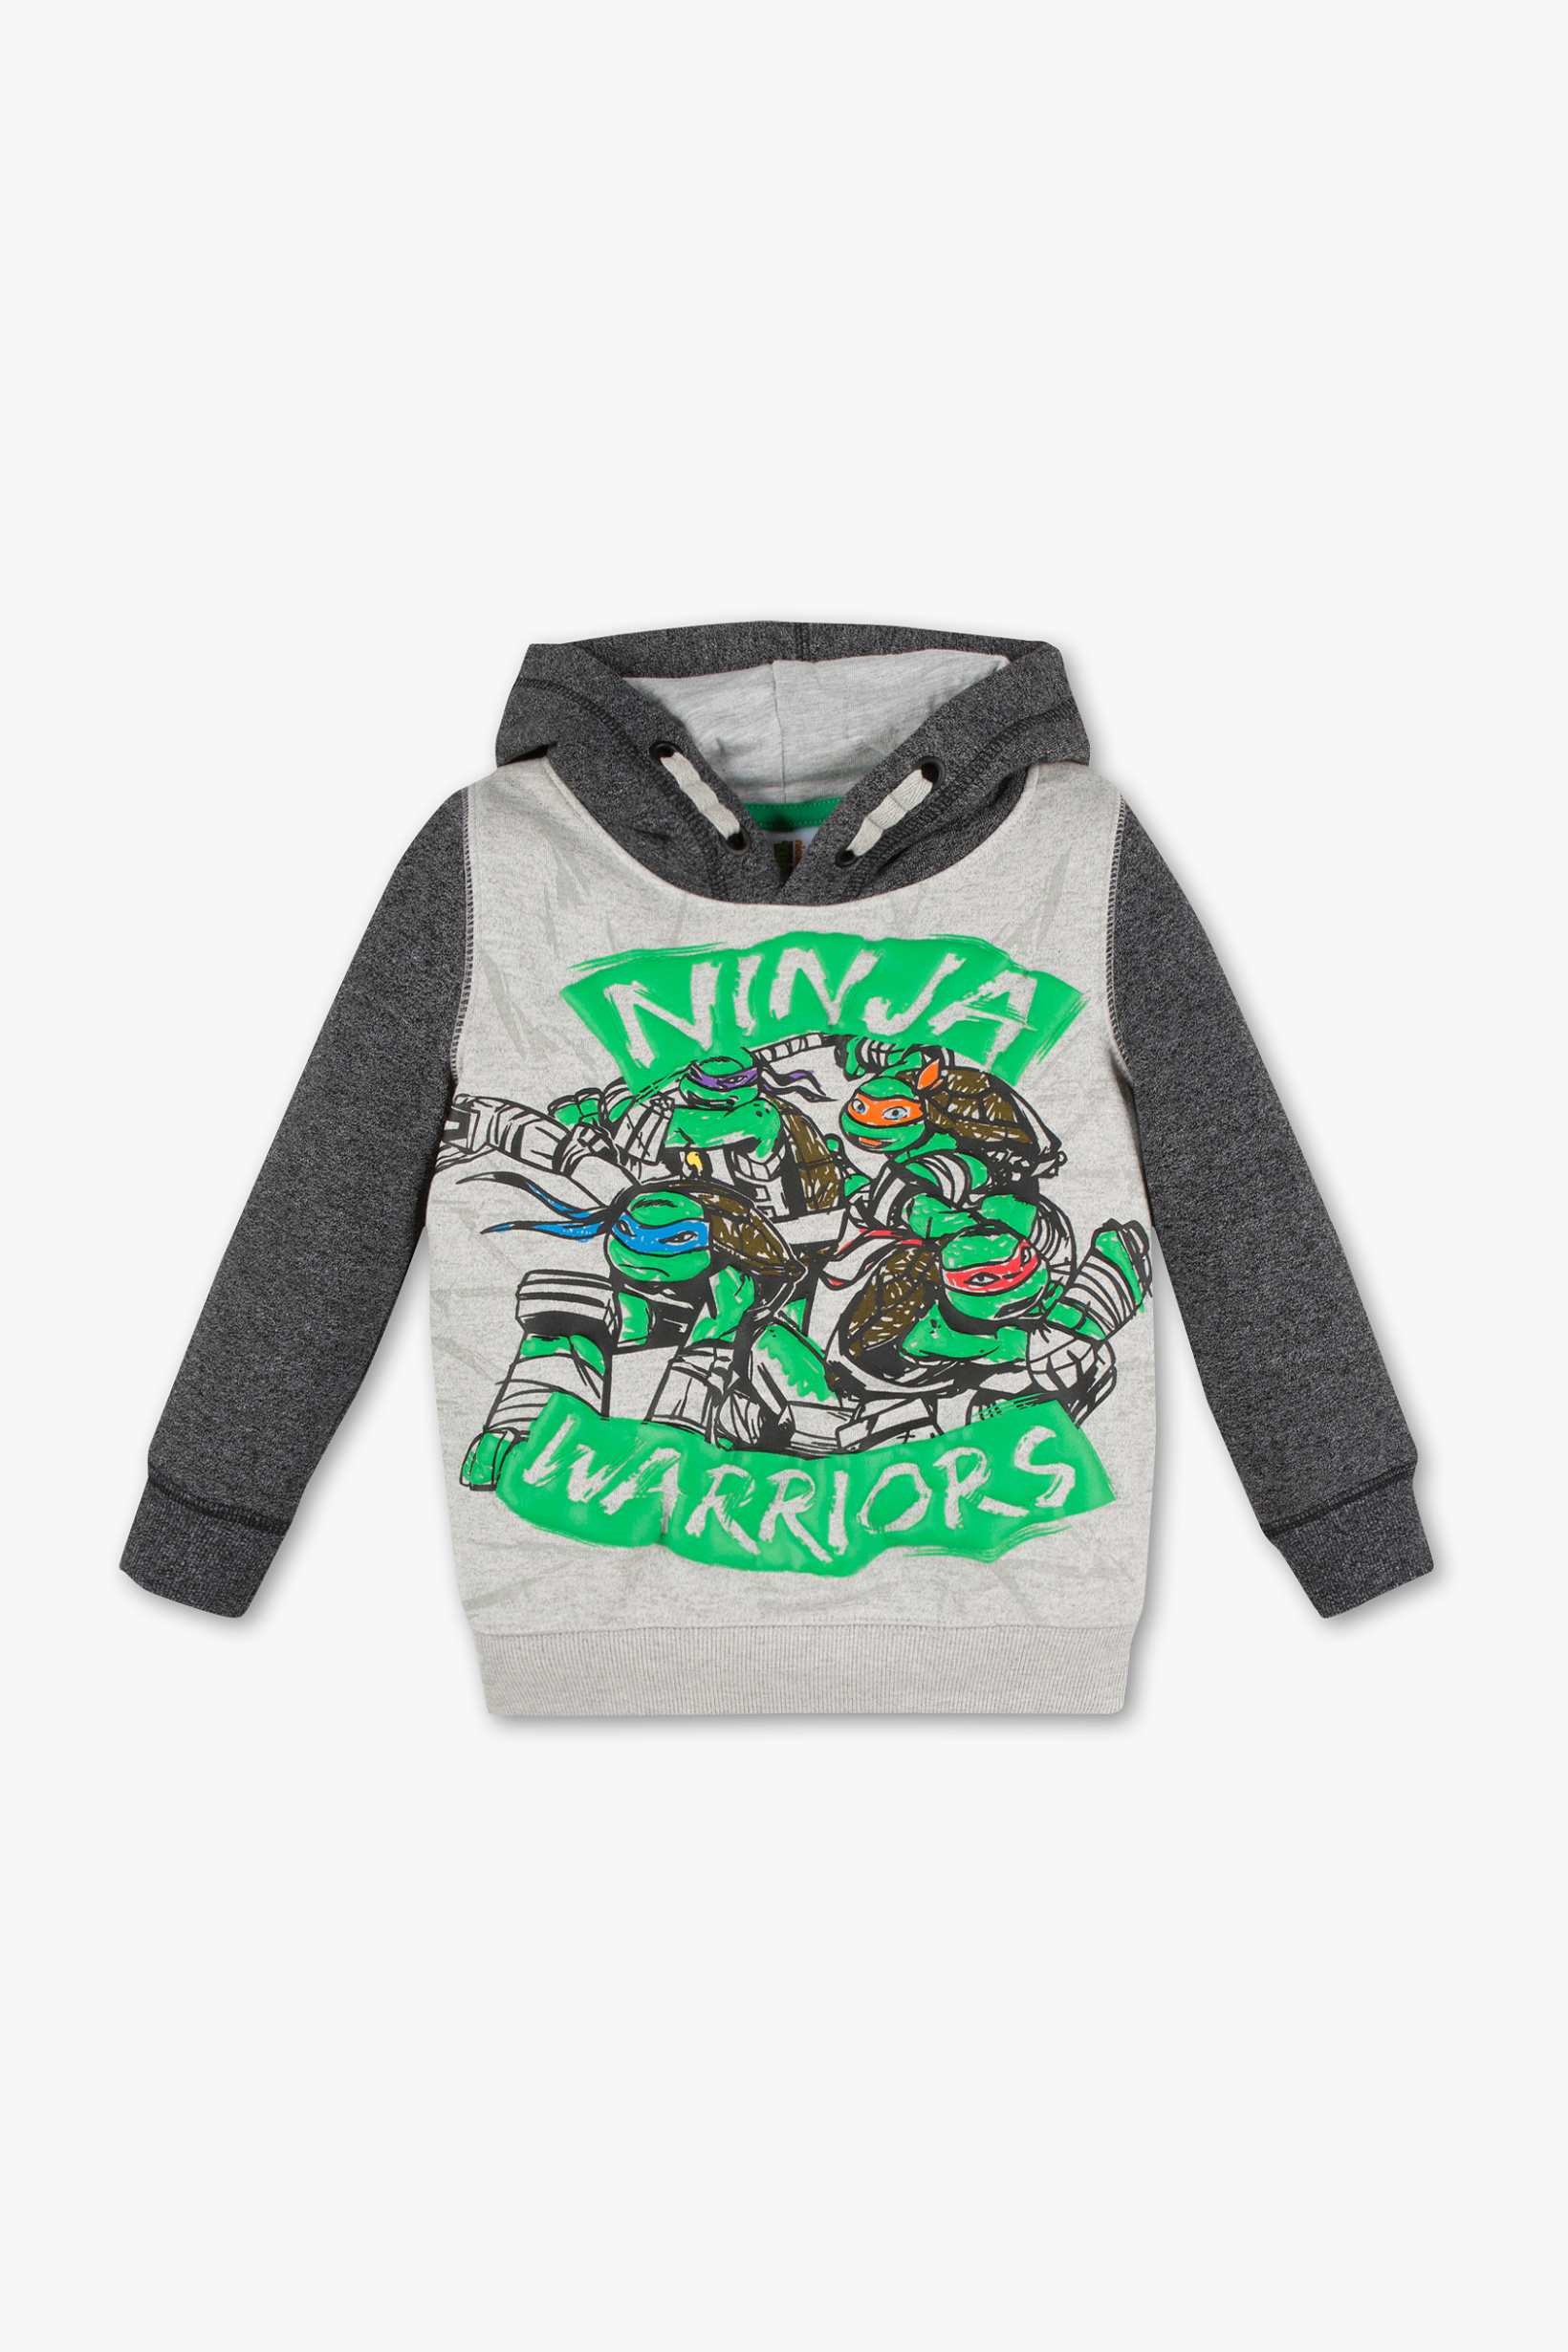 Ninja Turtles sweatshirt